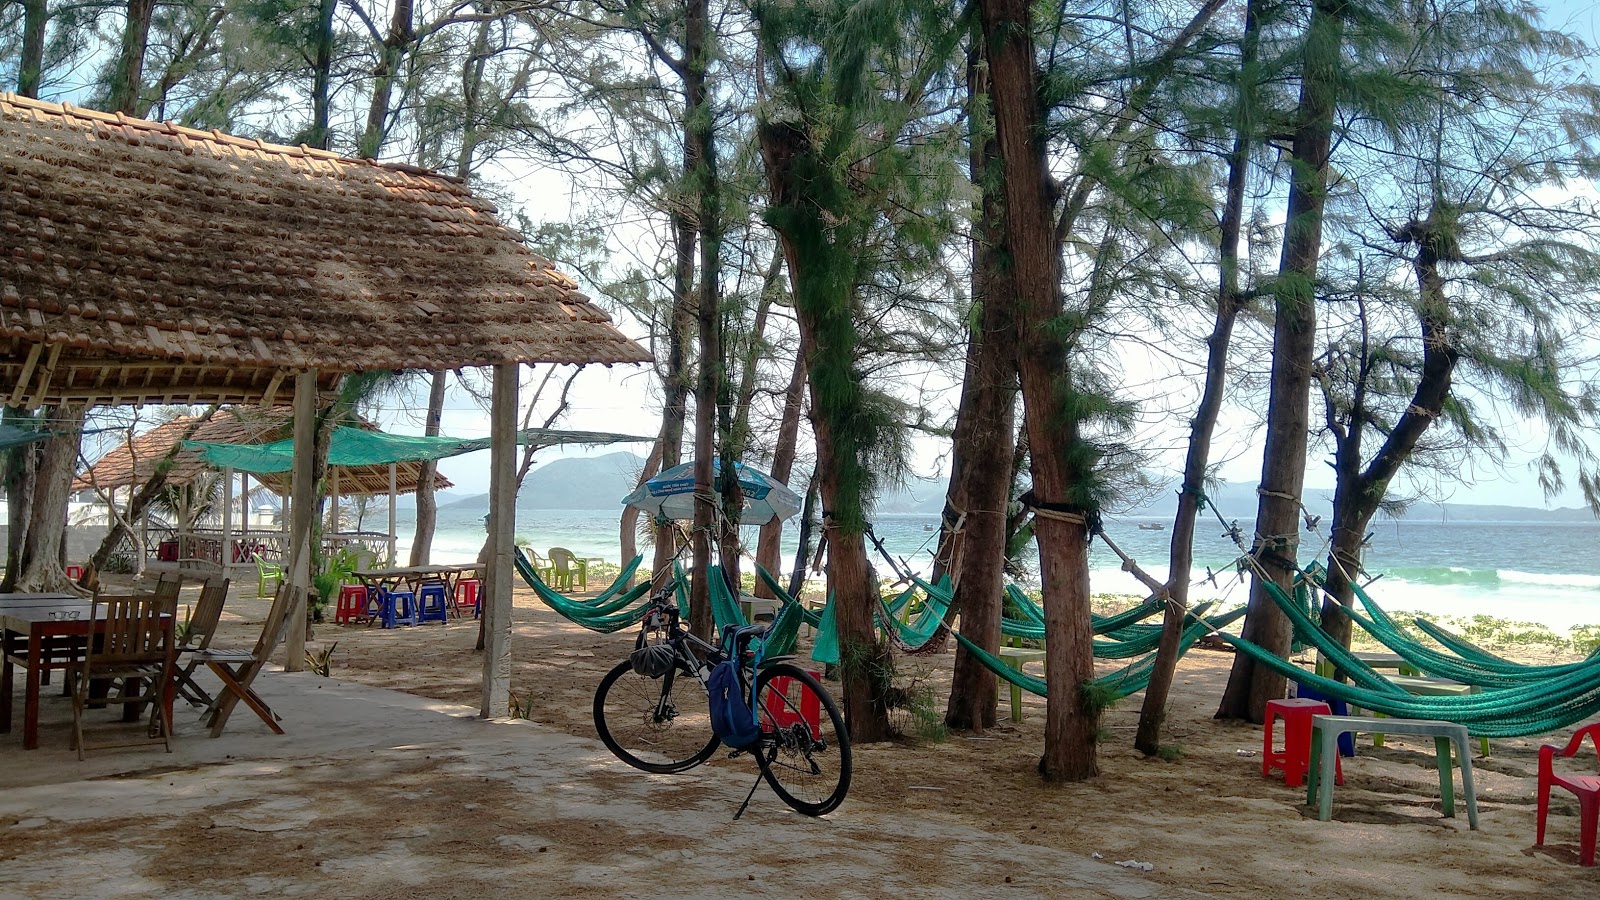 Ganh Do Beach'in fotoğrafı - rahatlamayı sevenler arasında popüler bir yer